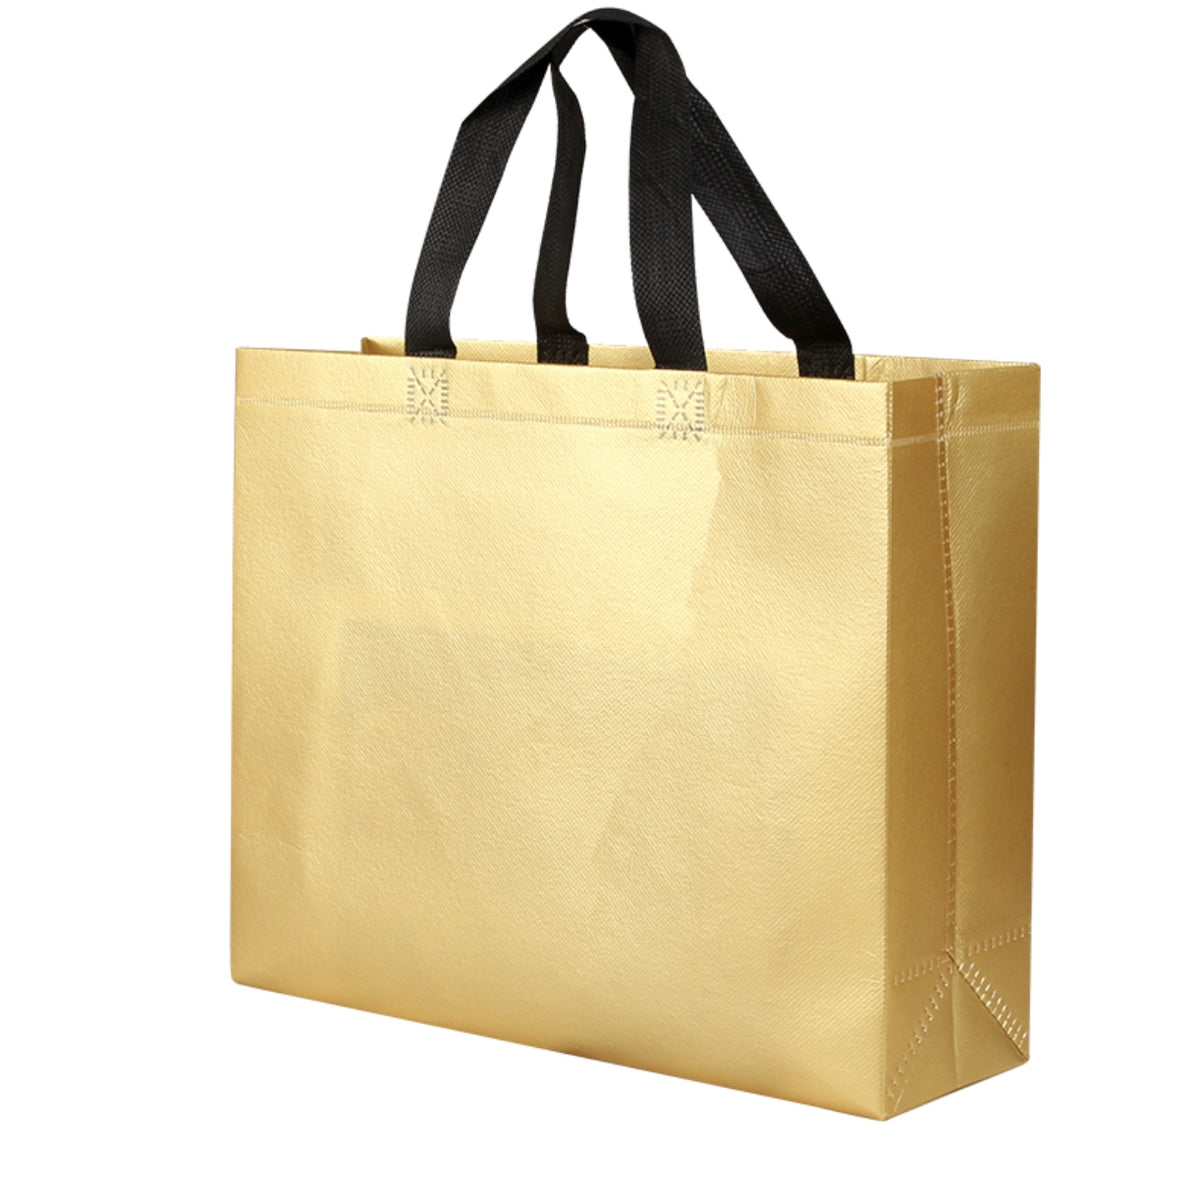 【客製化】不織布覆膜袋購物手提袋（有底有側款） | 禮品、贈品專業客製禮贈品顧問 | 禮品、贈品專屬客製禮贈品專家